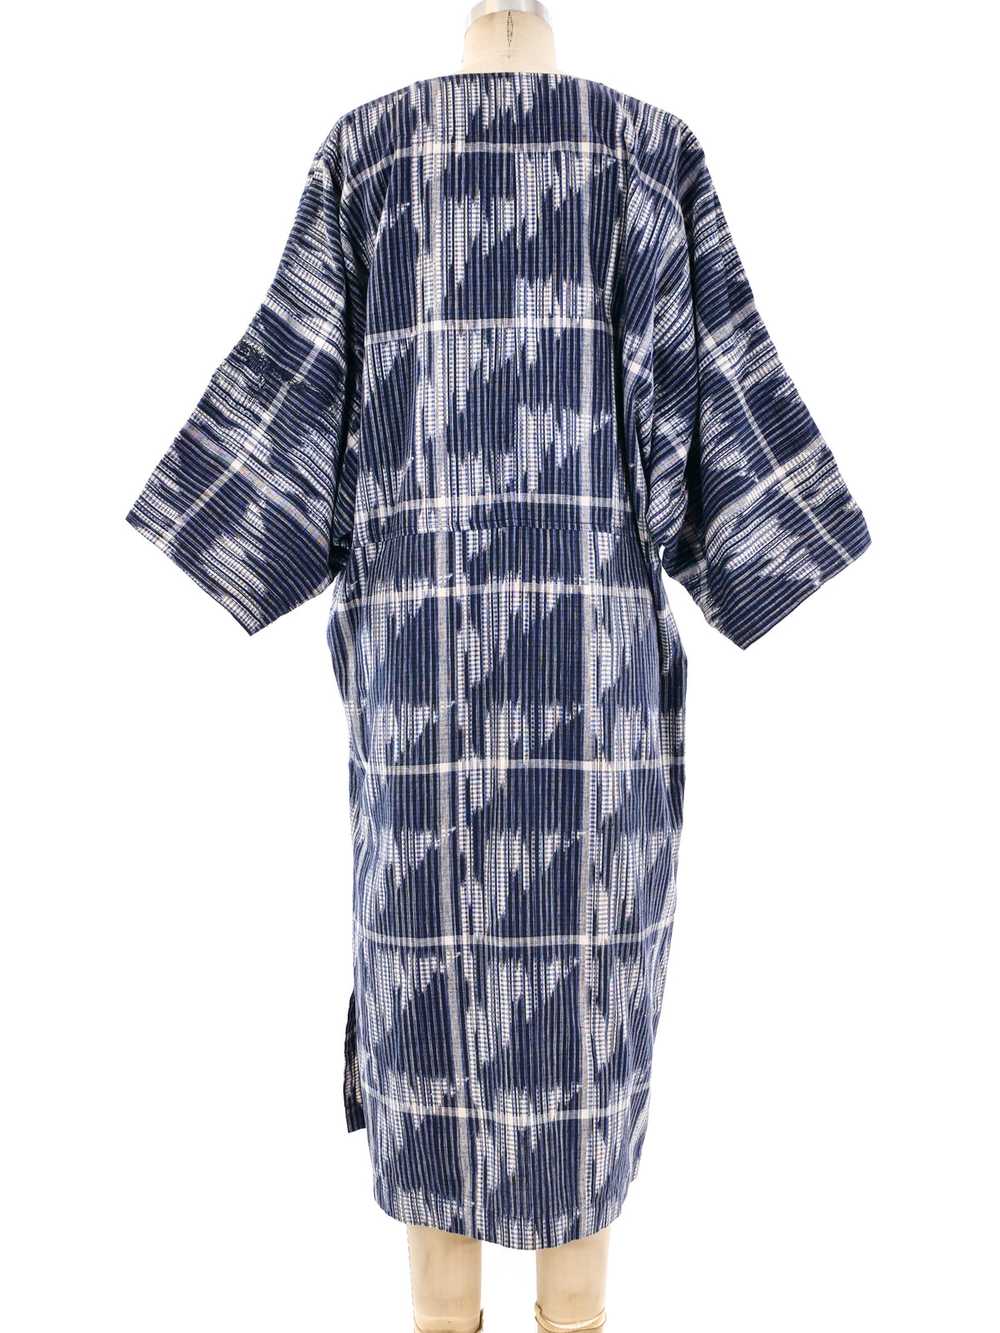 Issey Miyake Ikat Tunic Dress - image 4